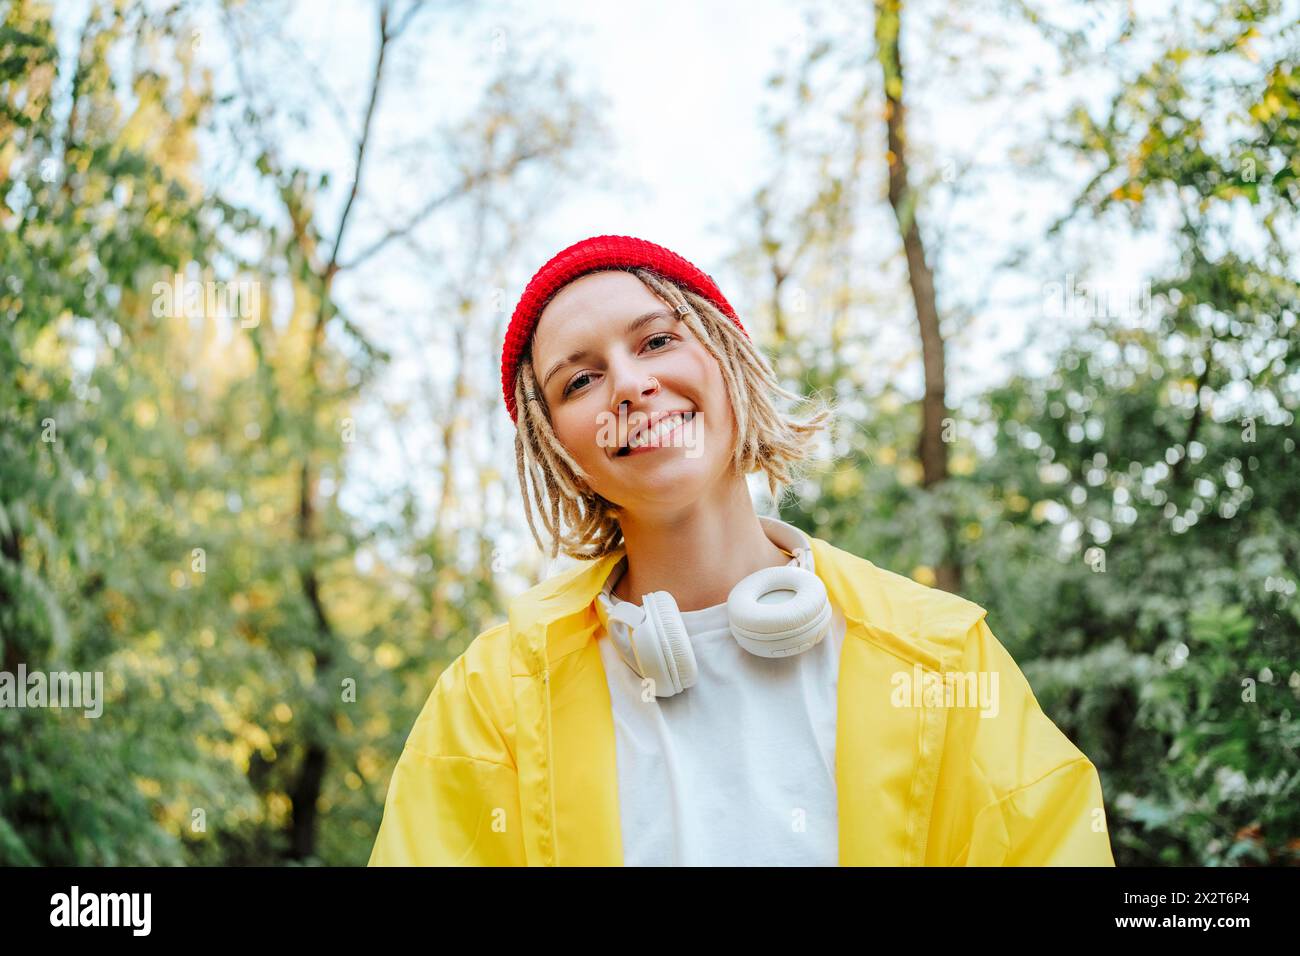 Lächelnde junge Frau mit Strickmütze und gelbem Regenmantel im Park Stockfoto